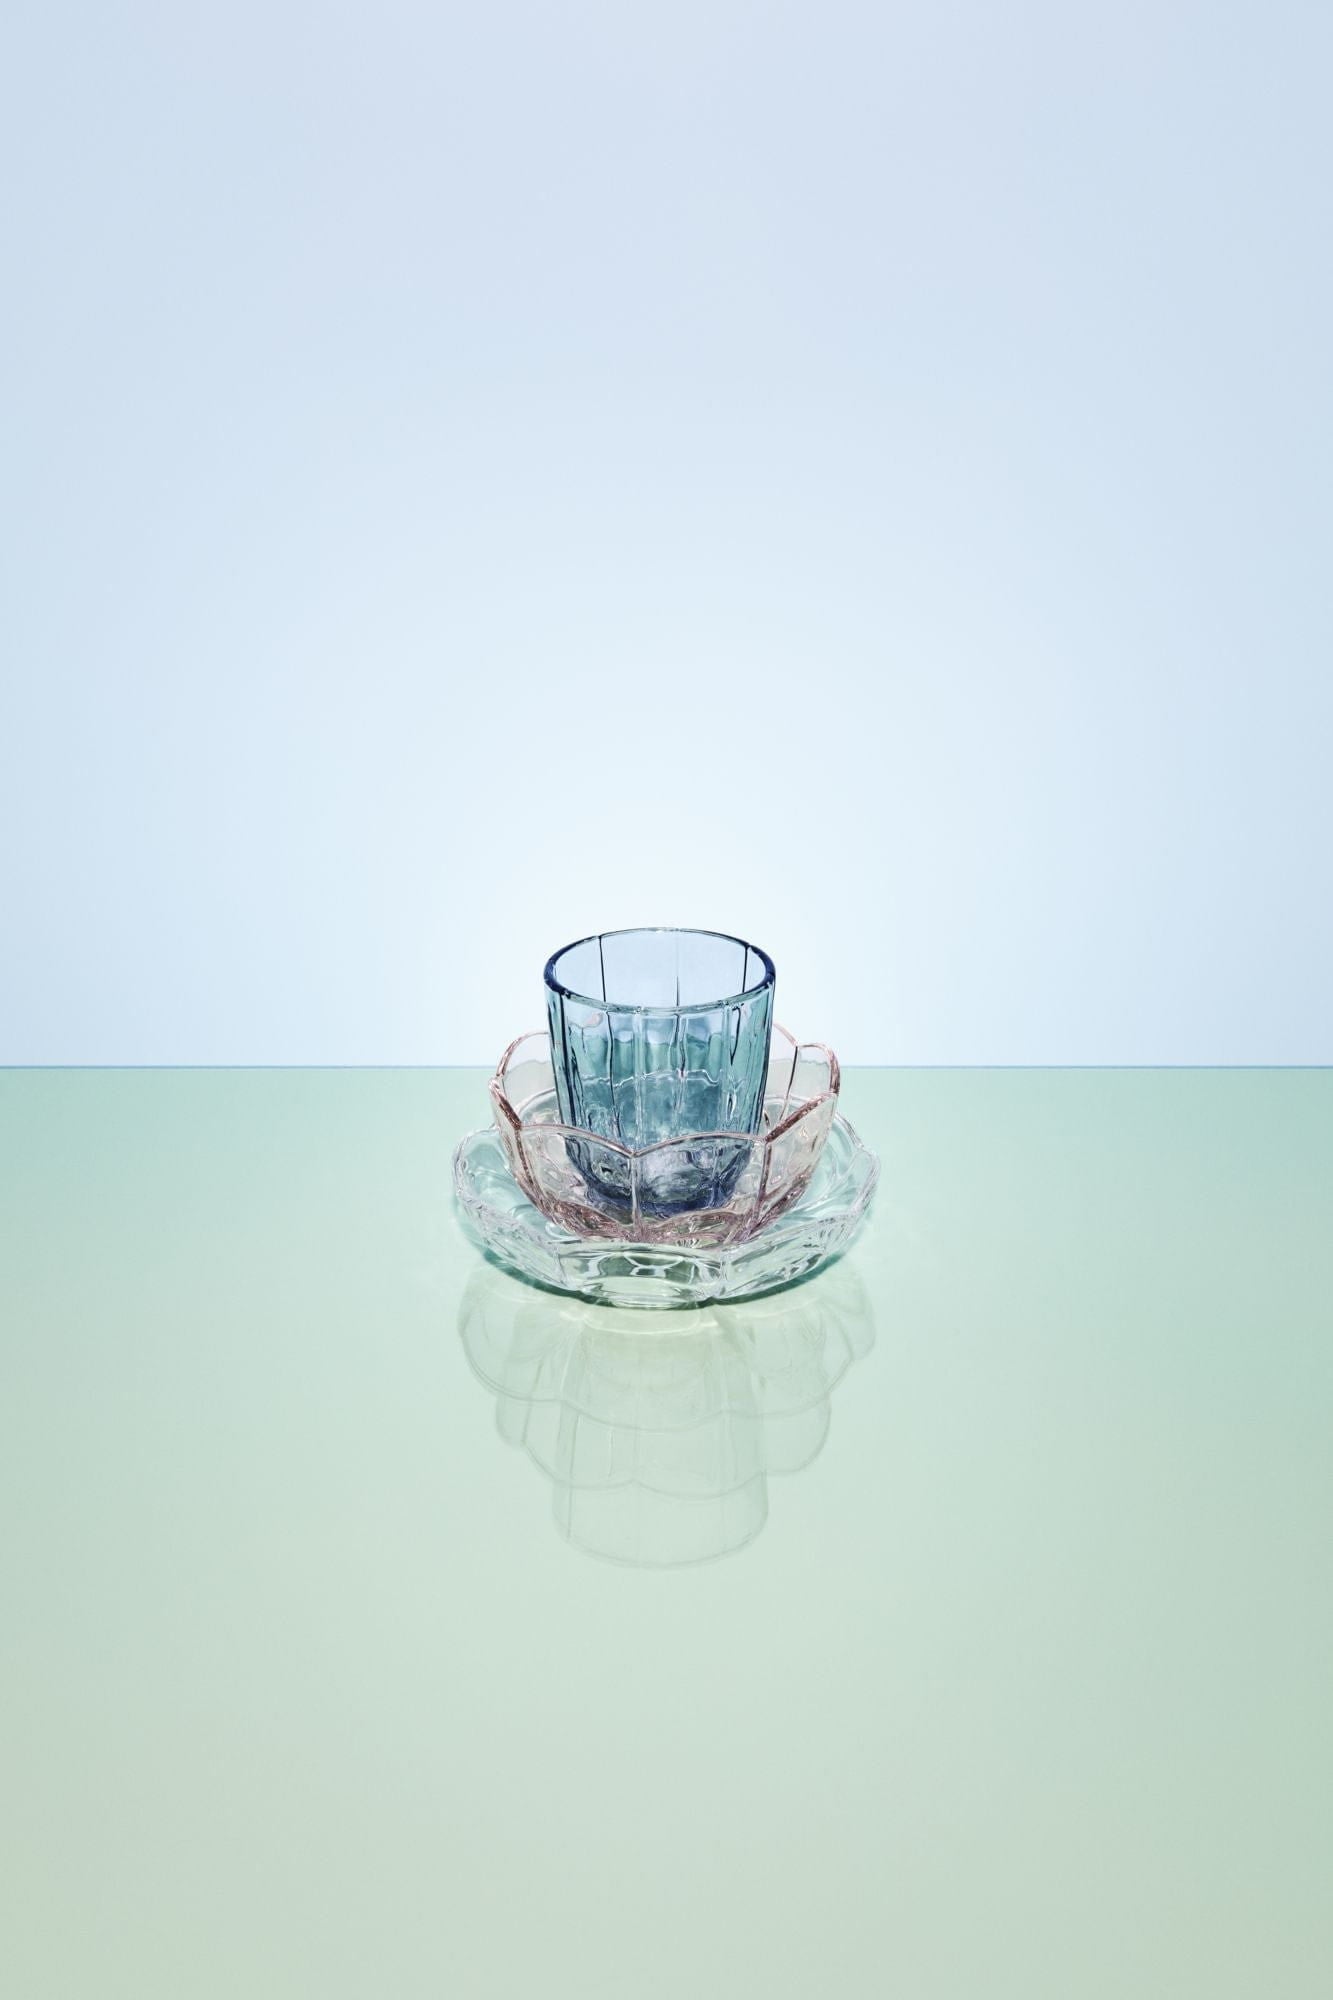 Holmegaard Lily vattenglasuppsättning av 2 320 ml, blå